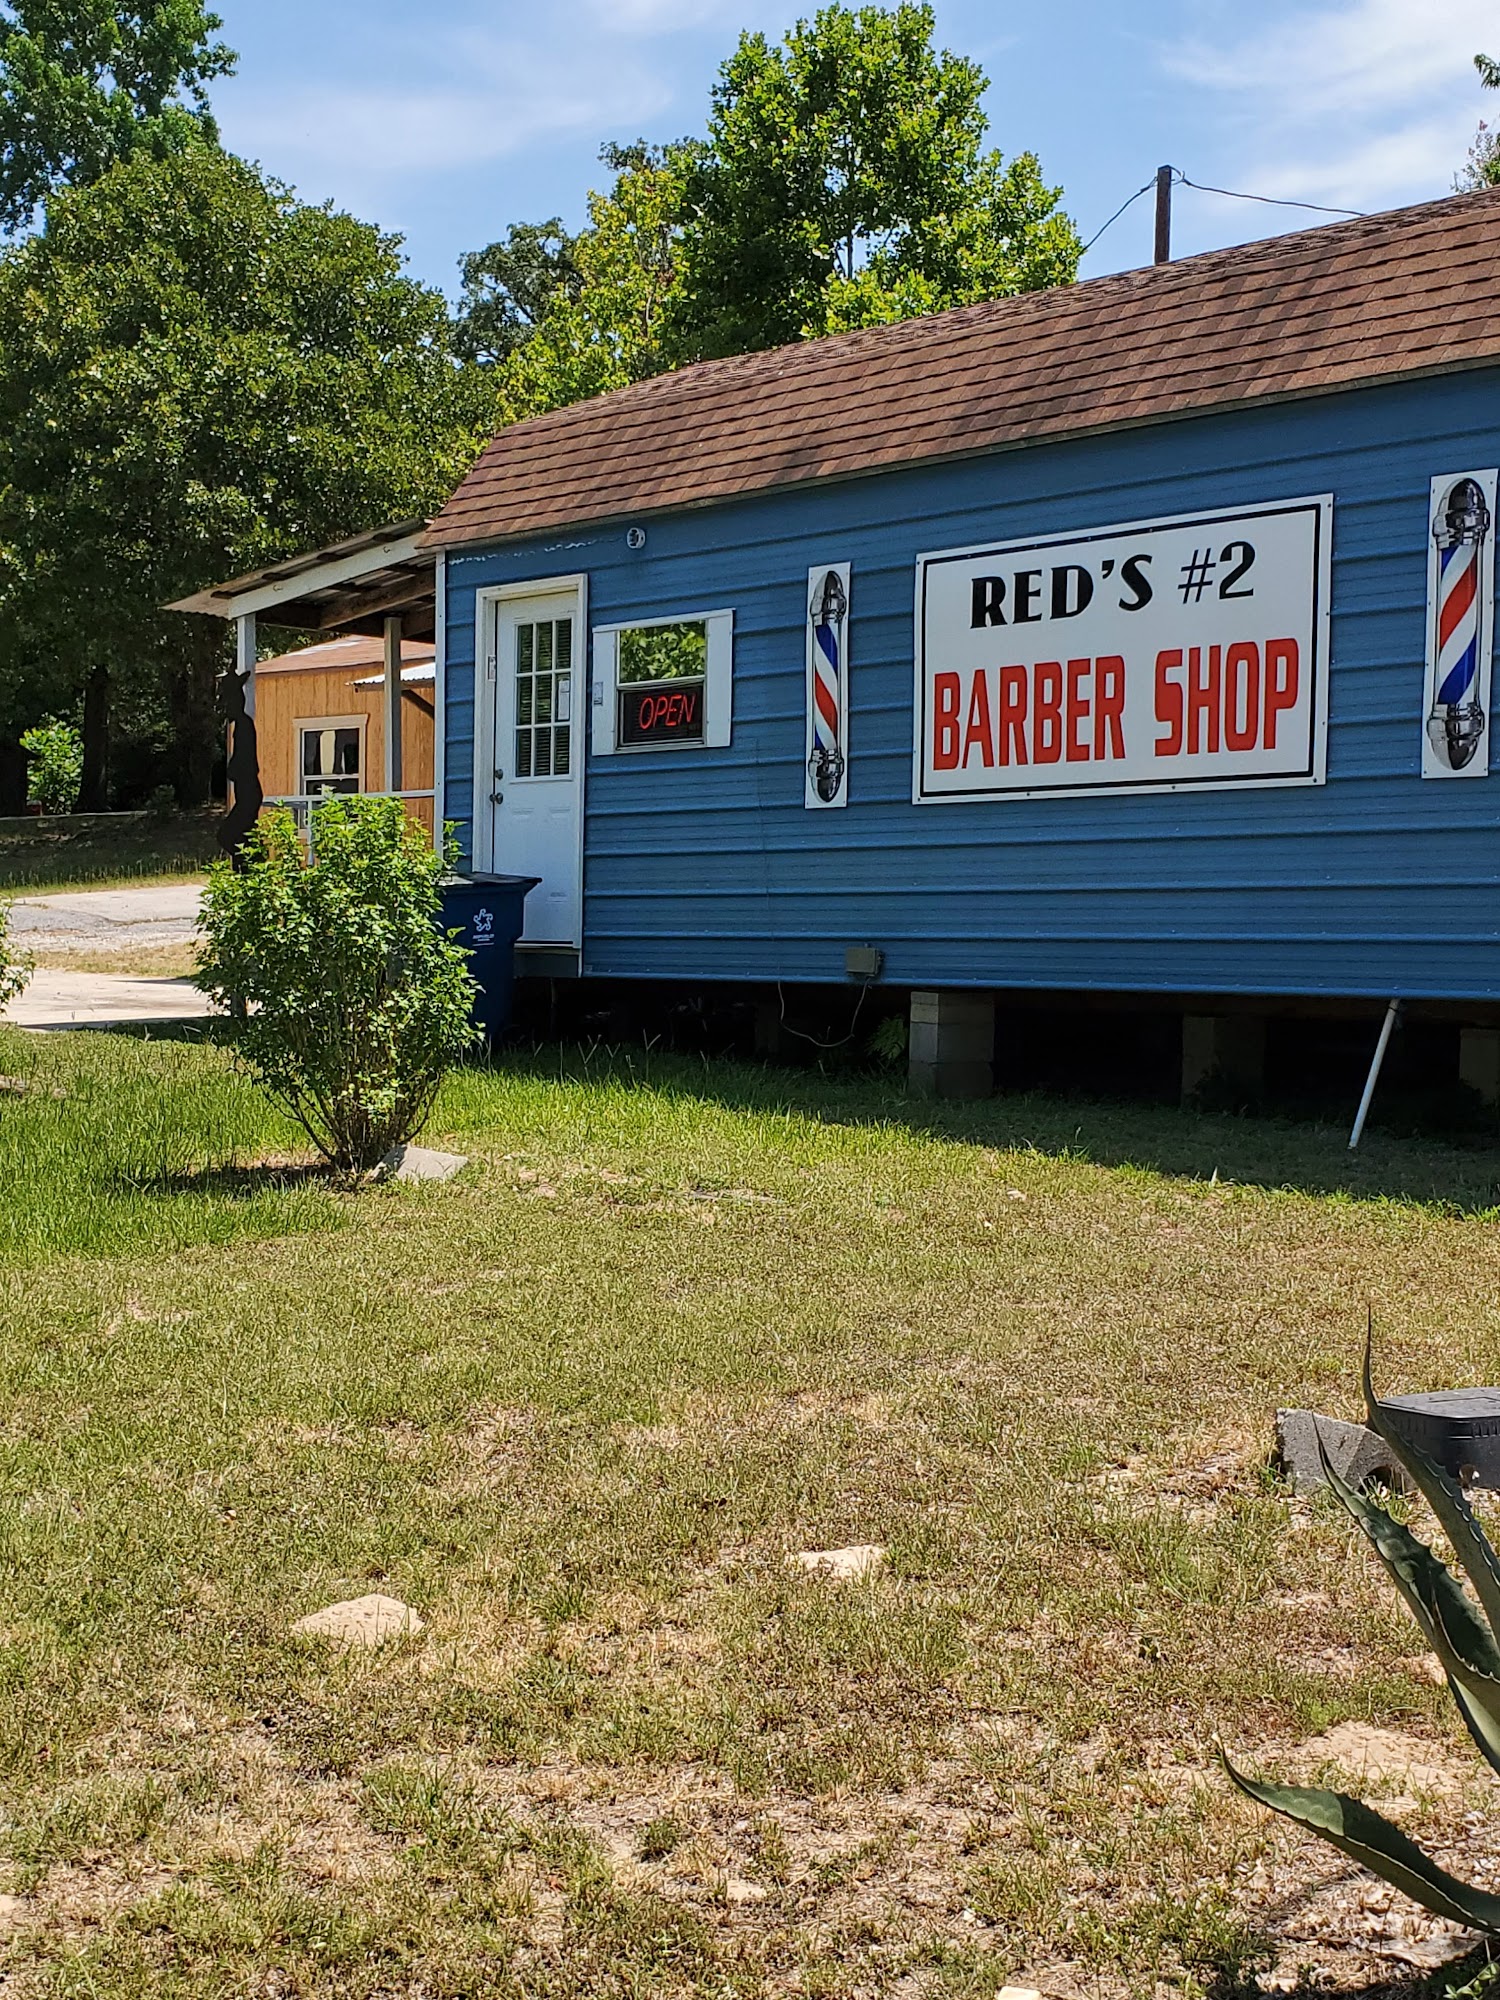 Red's Barber Shop # 2